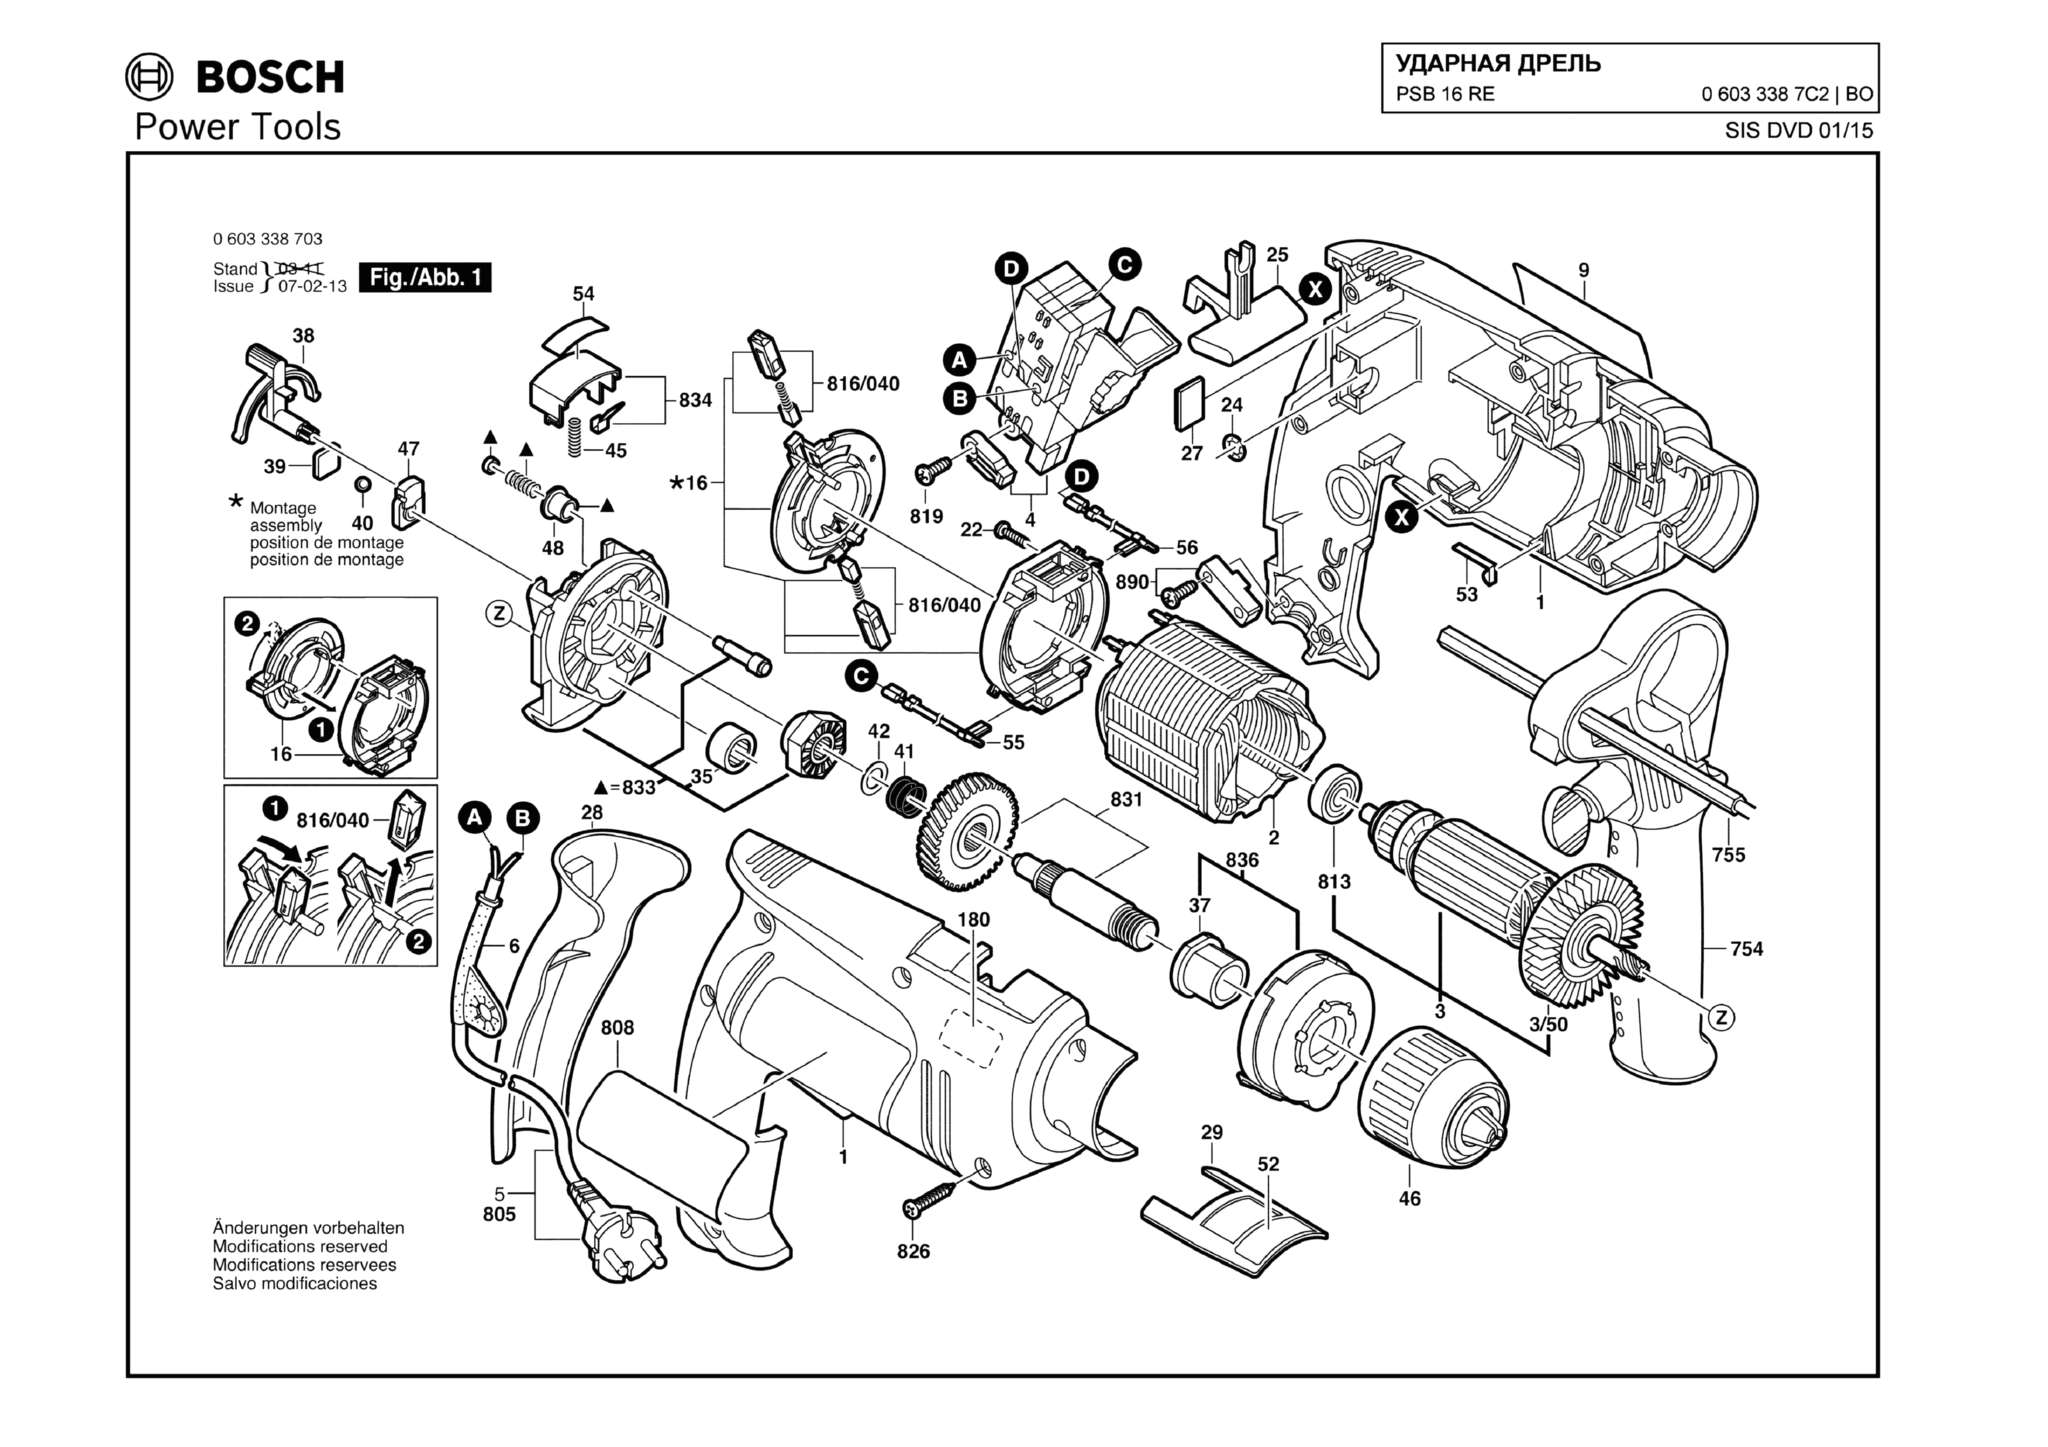 Запчасти, схема и деталировка Bosch PSB 16 RE (ТИП 06033387C2)